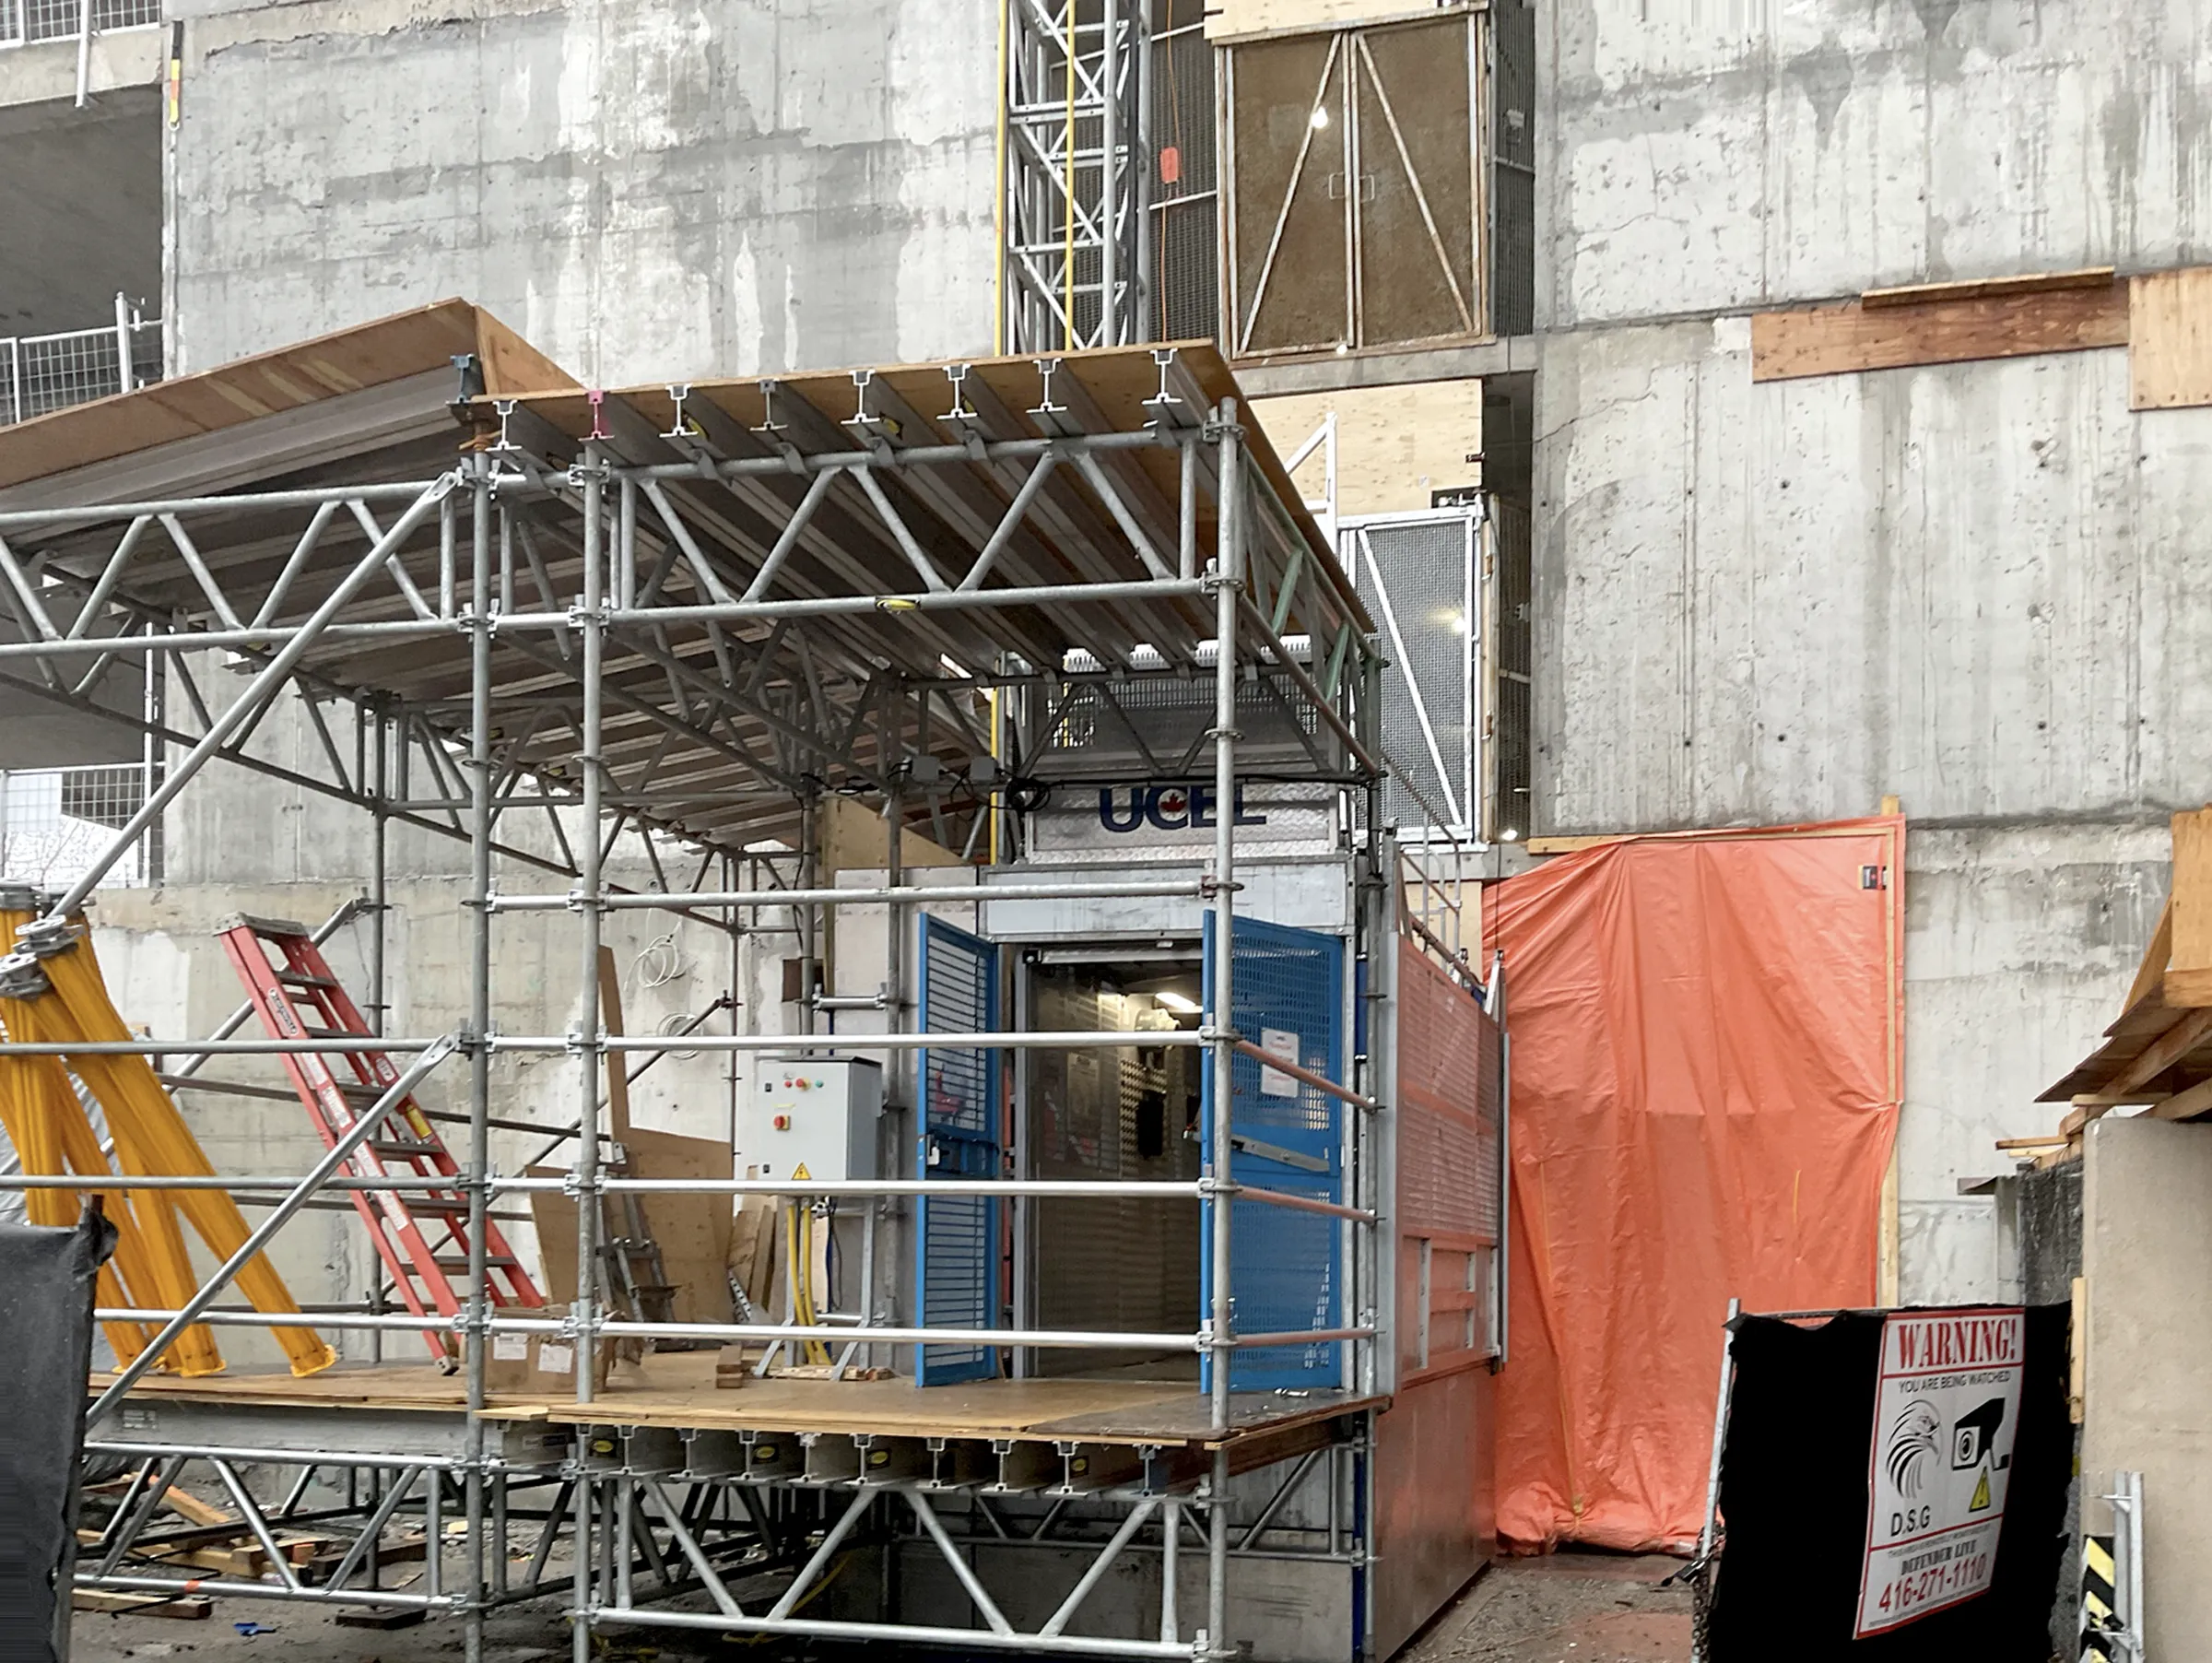 Parliament & Co commercial loft spaces construction update